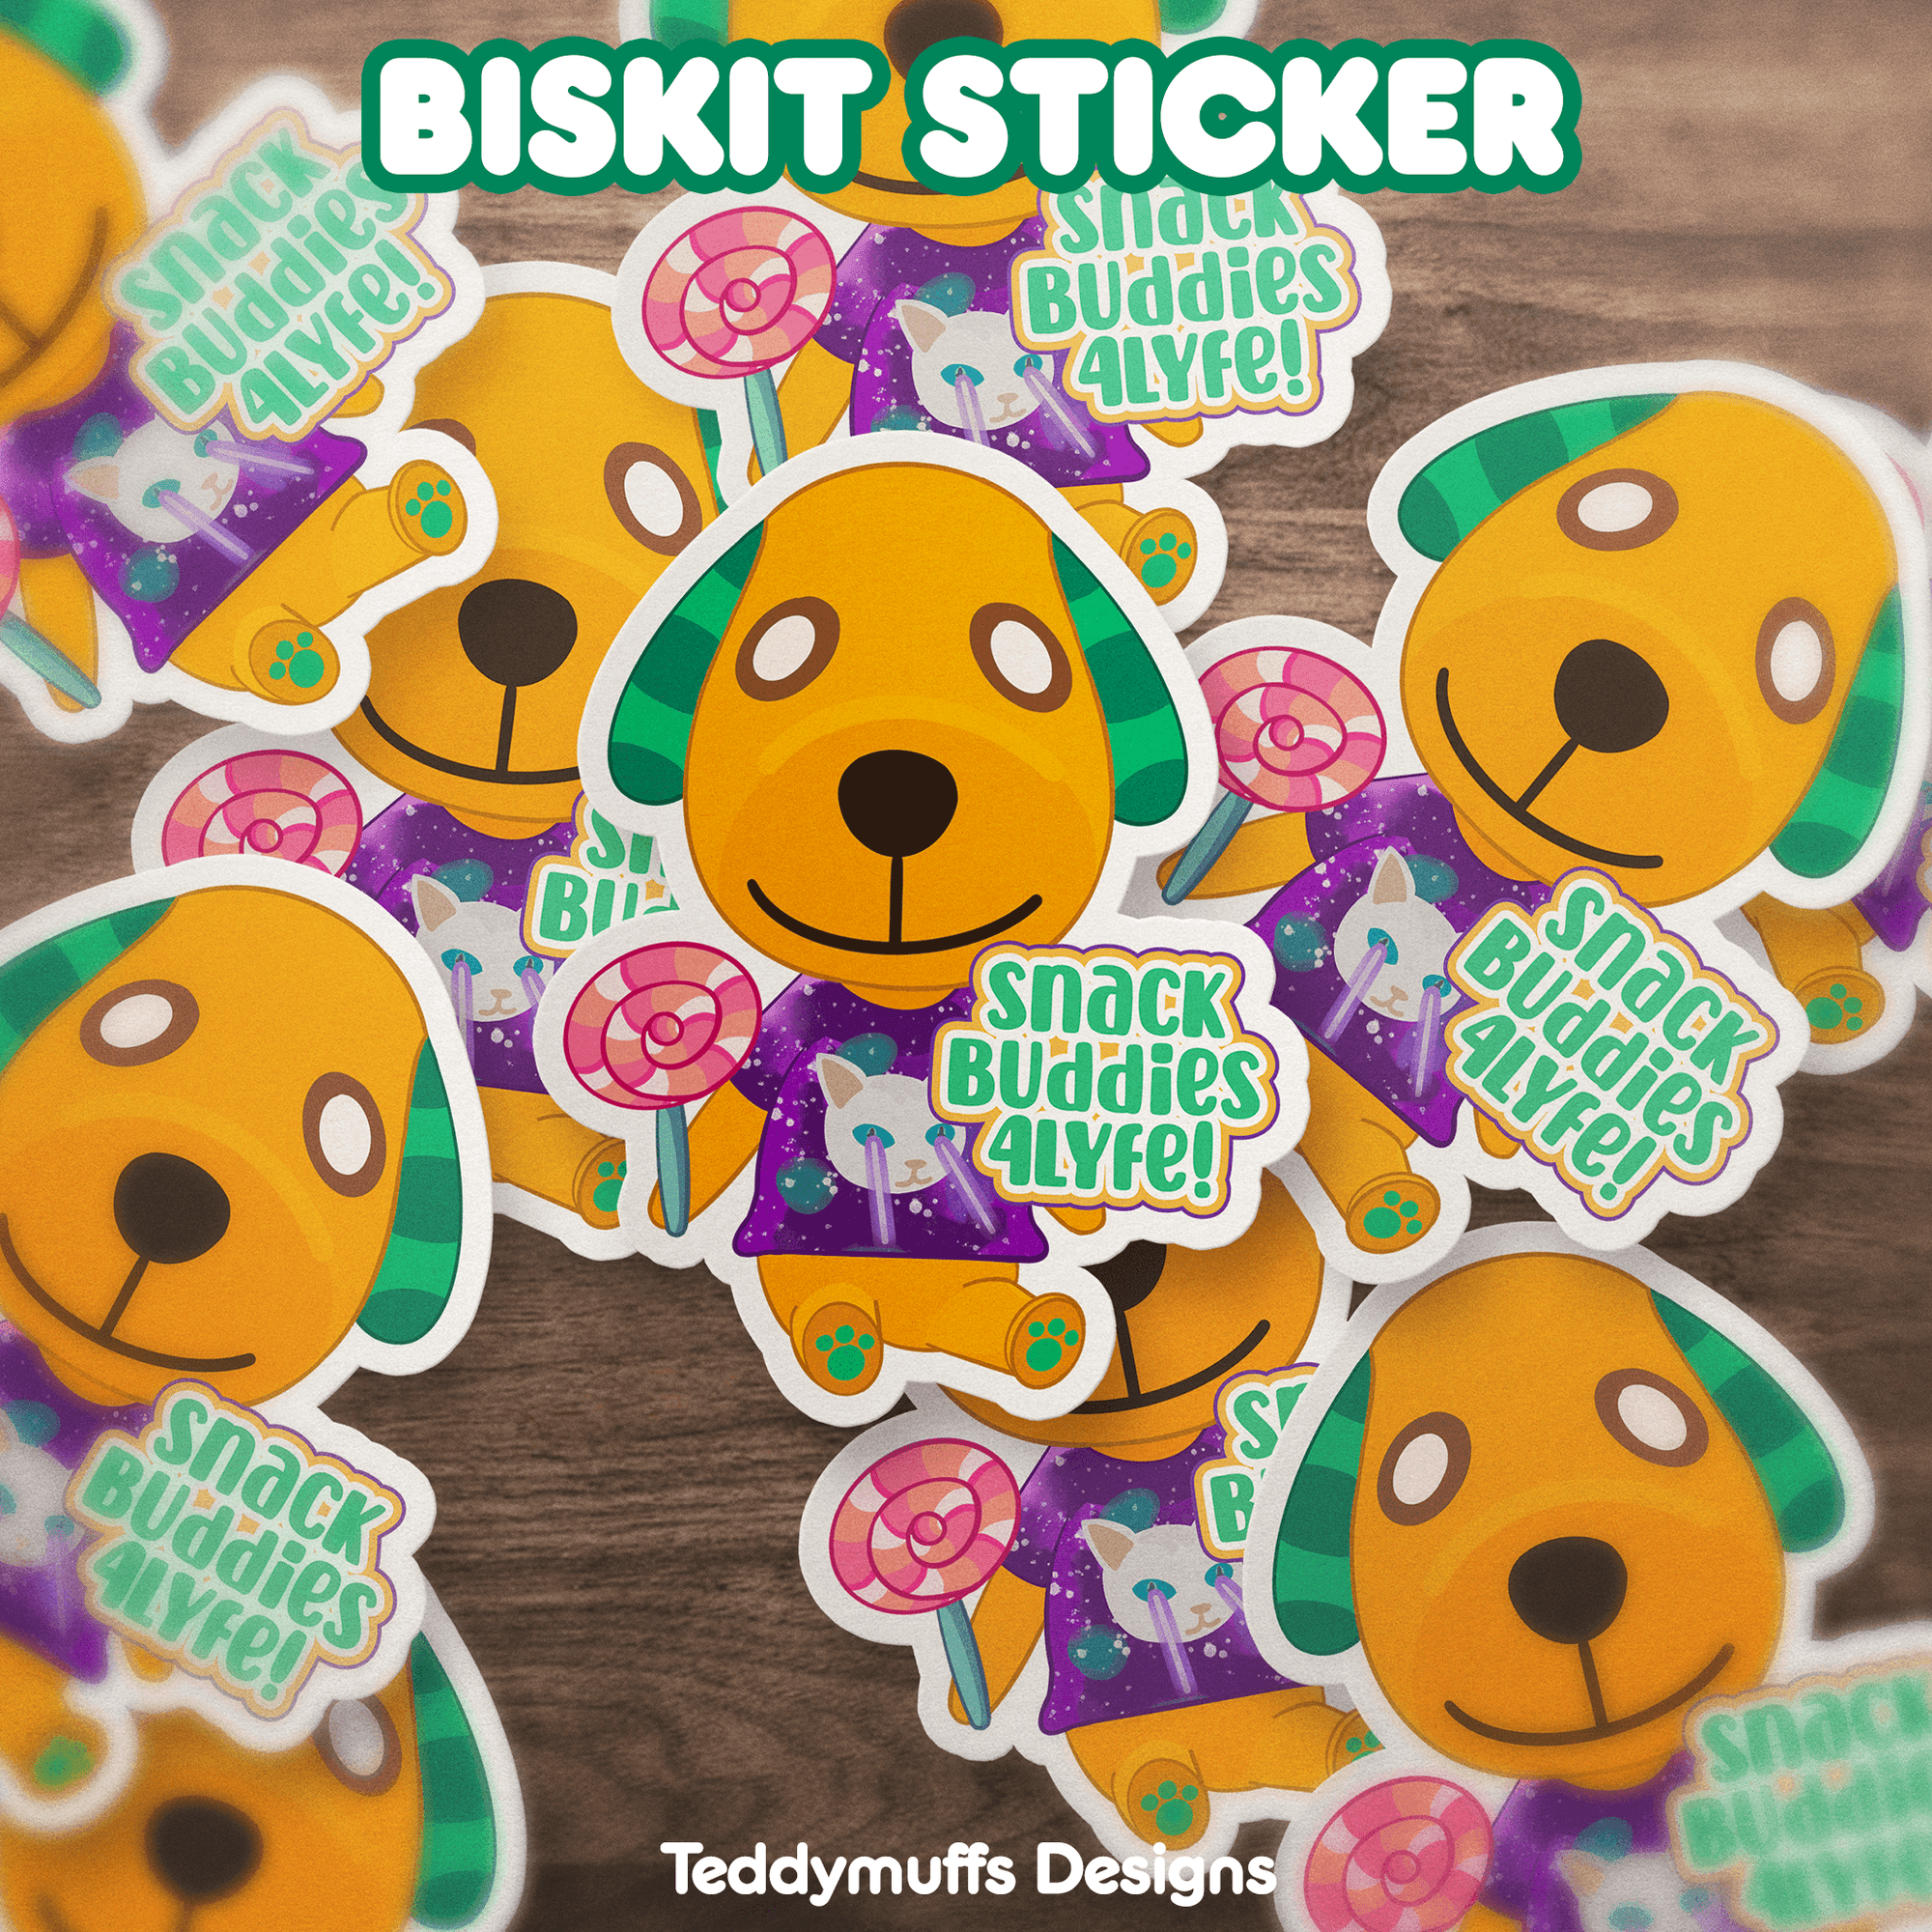 Biskit "Snack Buddy" Sticker - Teddymuffs Designs